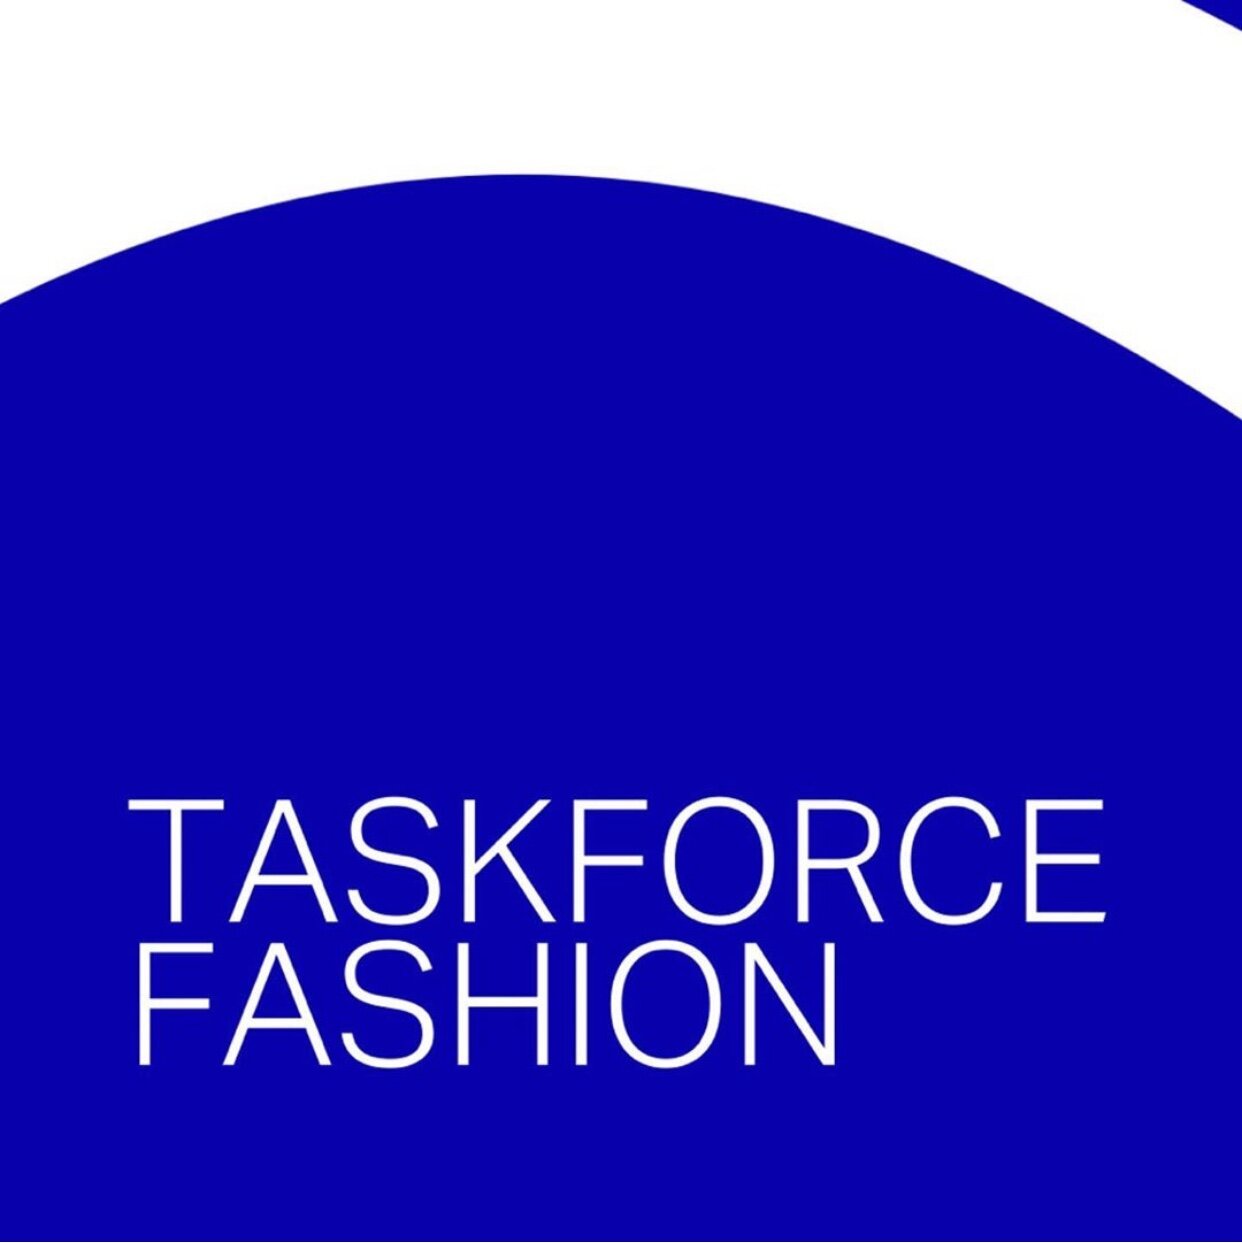 Taskforce Fashion